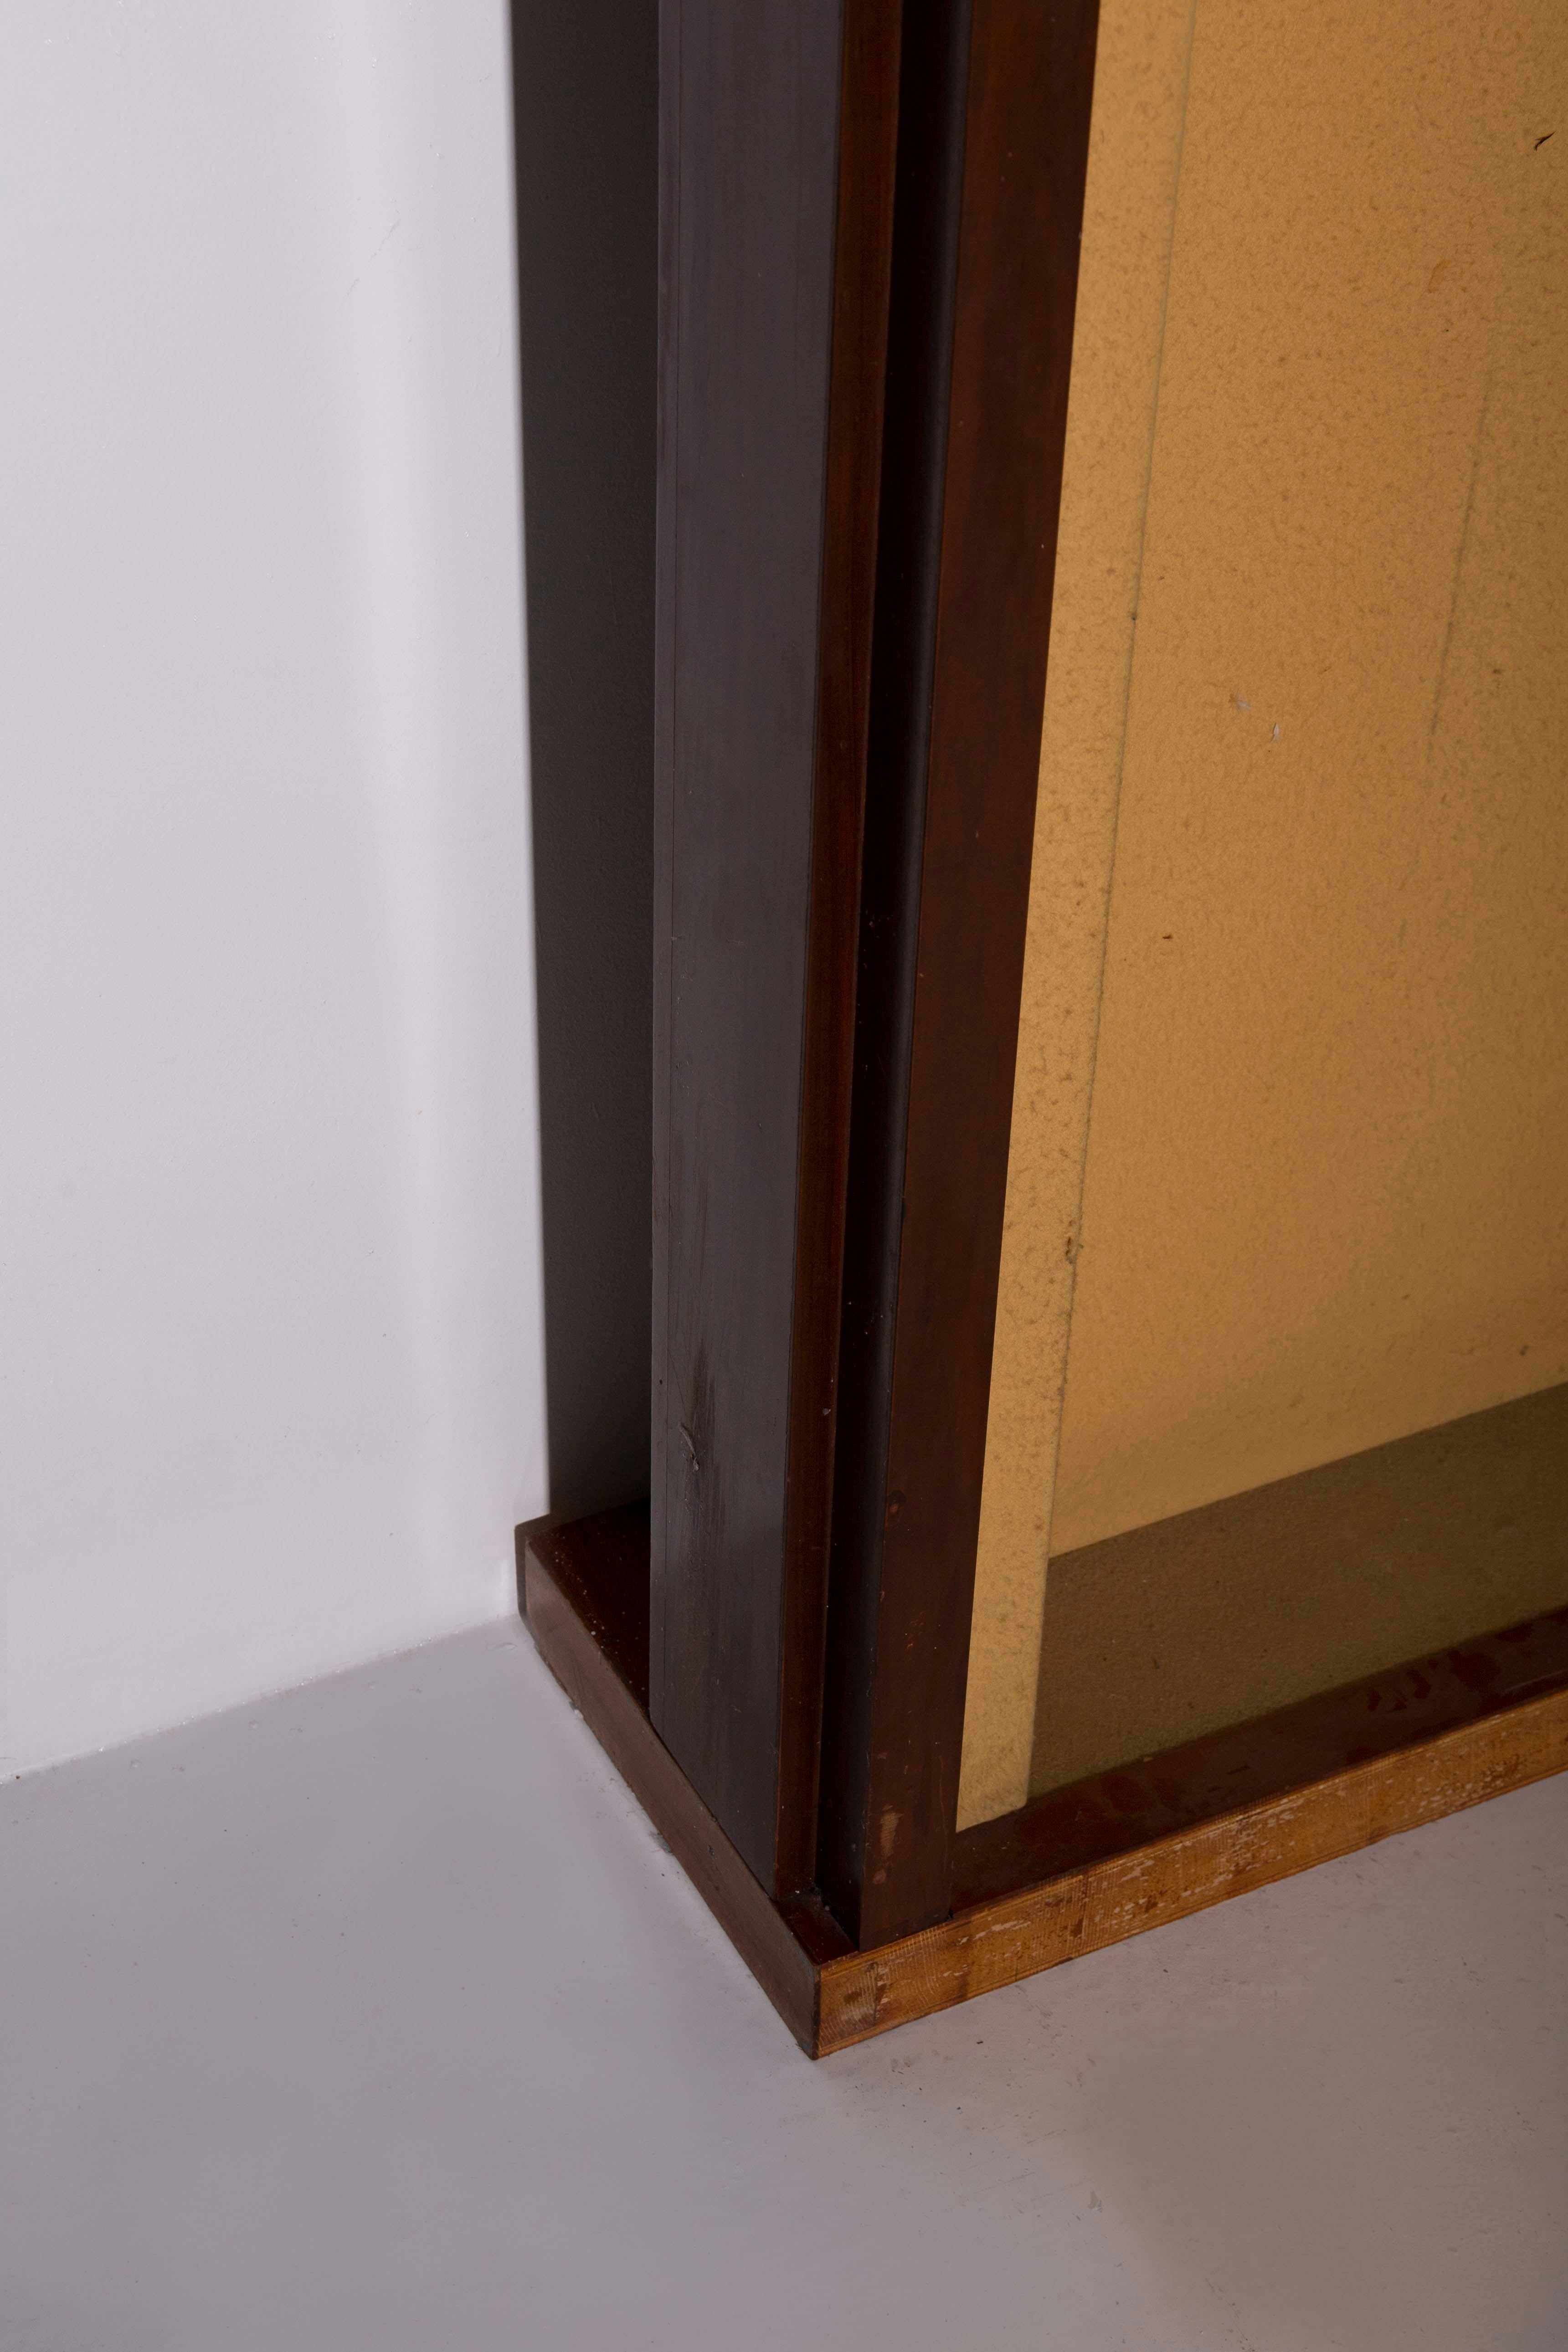 Sandro Petti Rare Entrance Furniture in brass and copper For Sale 4